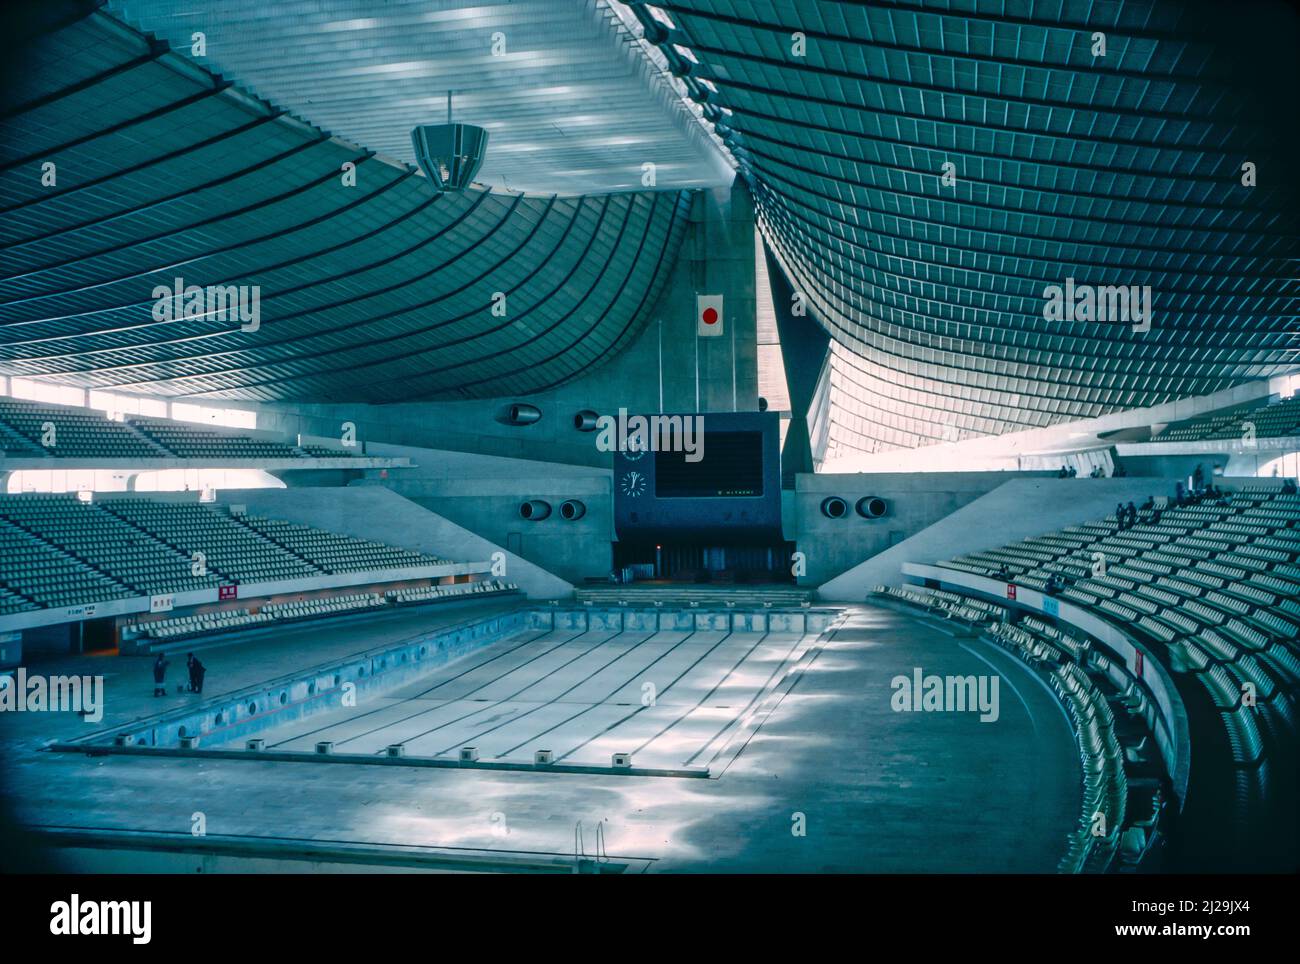 Le Yoyogi National Stadium est une arène intérieure du parc Yoyogi à Shibuya, Tokyo, célèbre pour son toit suspendu. Il a été conçu par Kenzo Tange et construit pour accueillir les événements aquatiques des Jeux Olympiques d'été de 1964. Banque D'Images